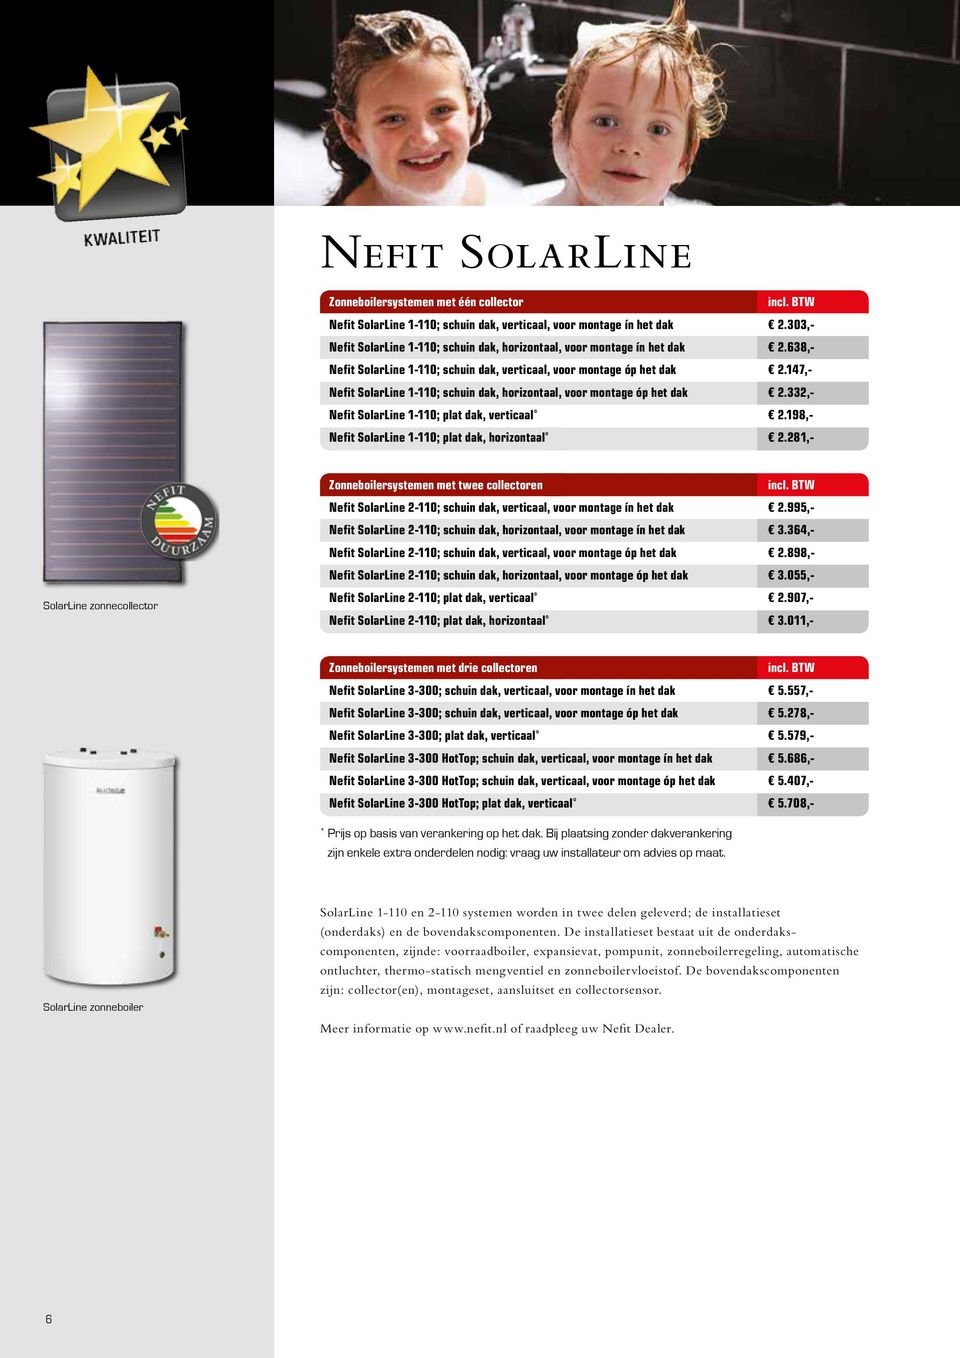 147,- Nefit SolarLine 1-110; schuin dak, horizontaal, voor montage óp het dak 2.332,- Nefit SolarLine 1-110; plat dak, verticaal * 2.198,- Nefit SolarLine 1-110; plat dak, horizontaal * 2.